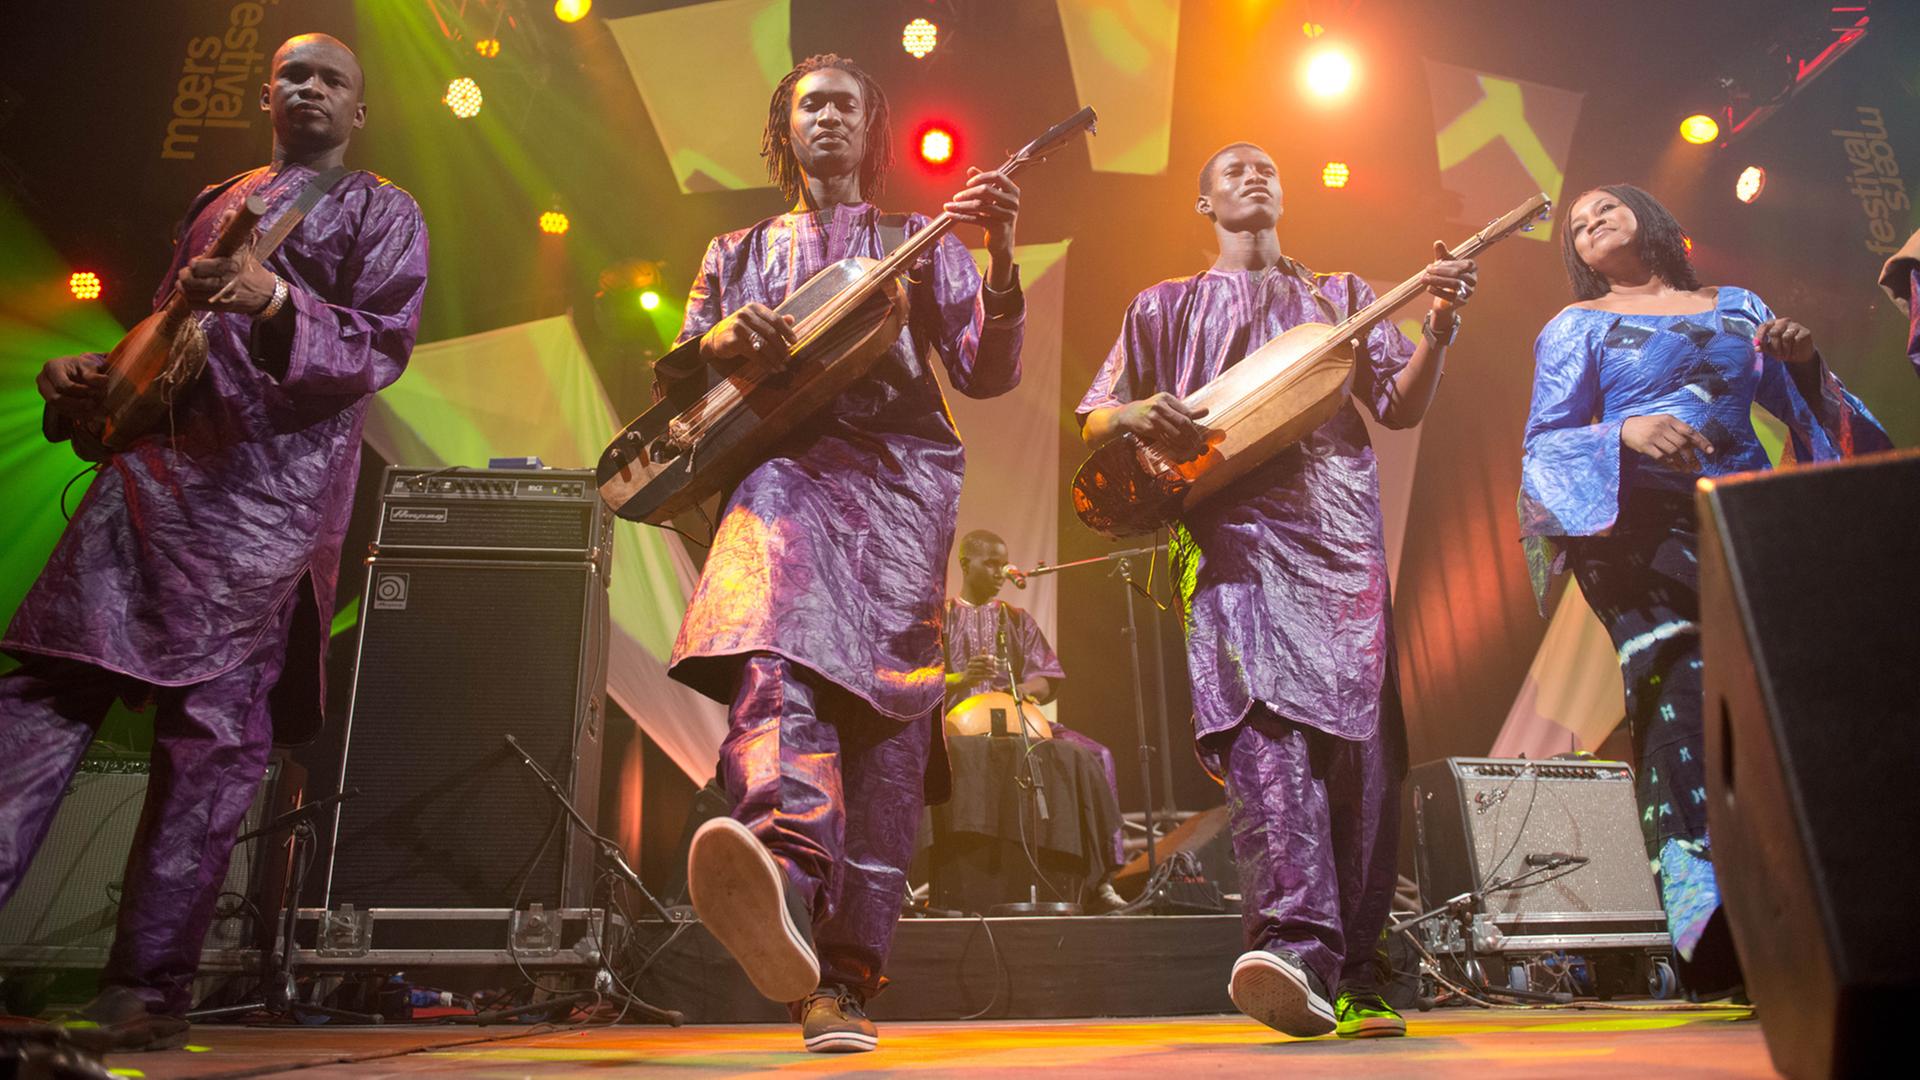 Bassekou Kouyaté (zweiter von links) aus Mali im Mai 2013 auf dem Moers Festvial in Moers: Mittlerweile haben sich seine Musiker von ihm getrennt und gerade als Gambari Band ihr Debütalbum "Kokuma" herausgebracht.